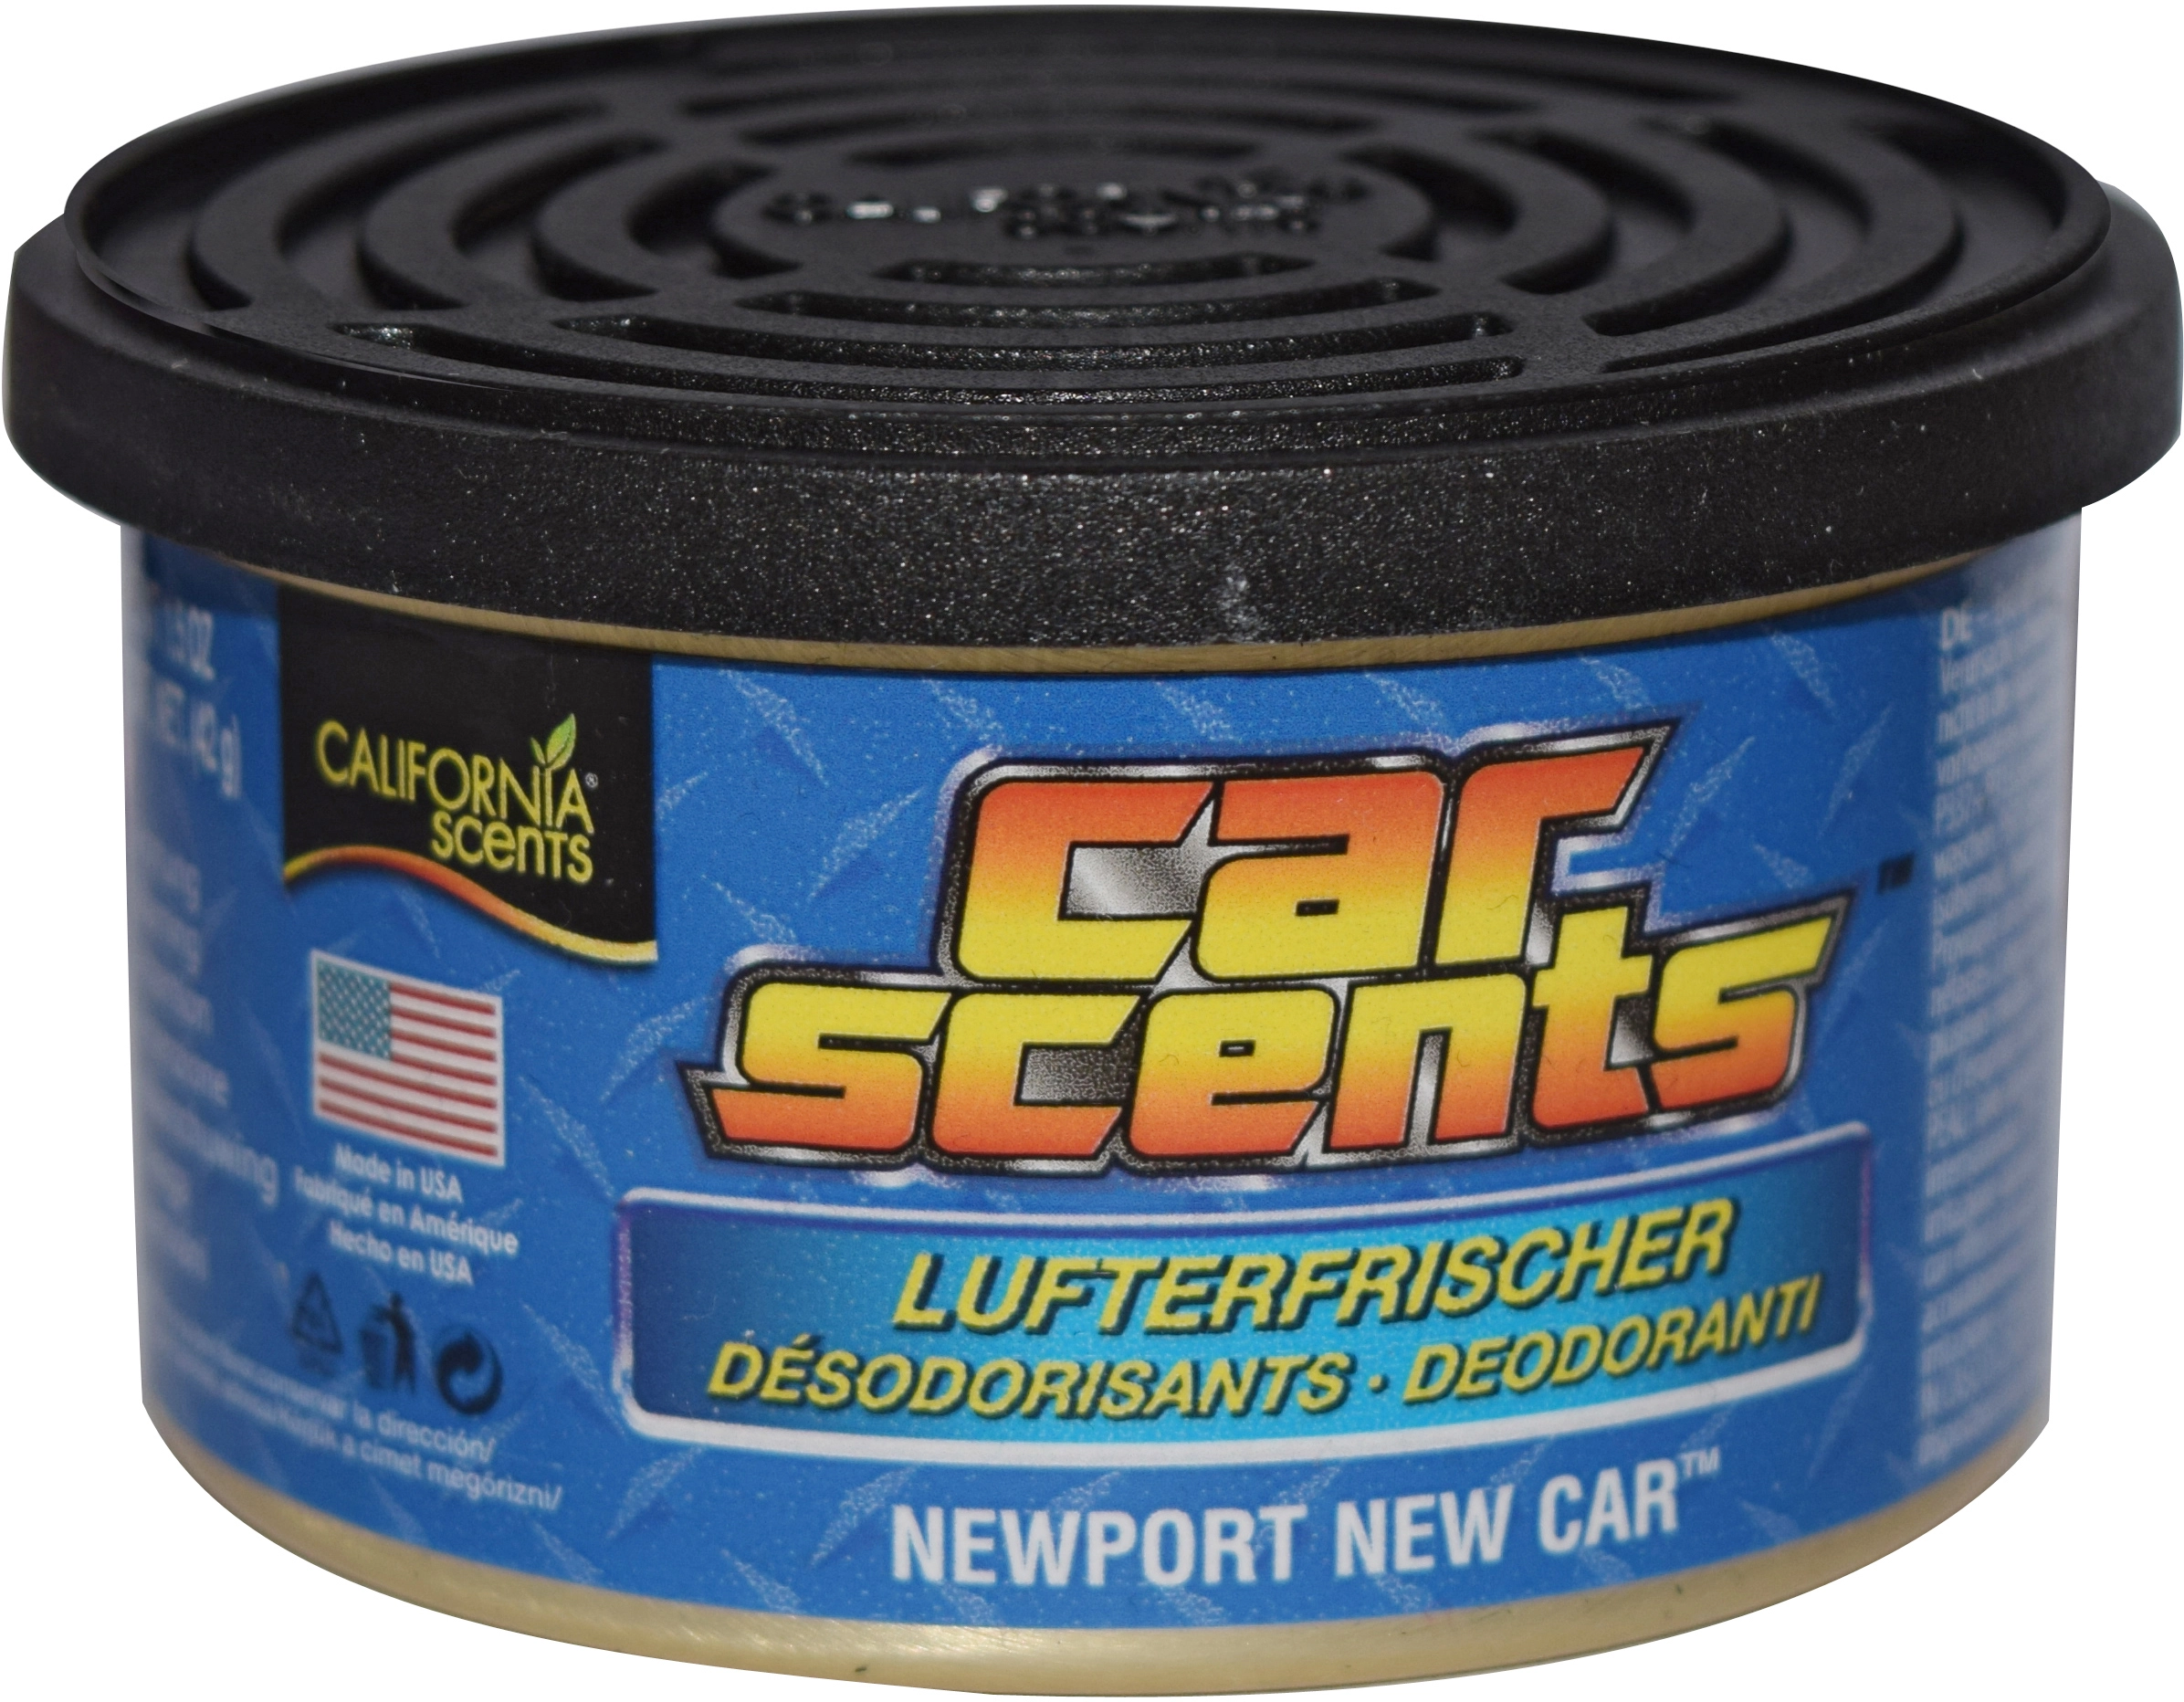 California Scents Newport New Car Lufterfrischer in der Dose